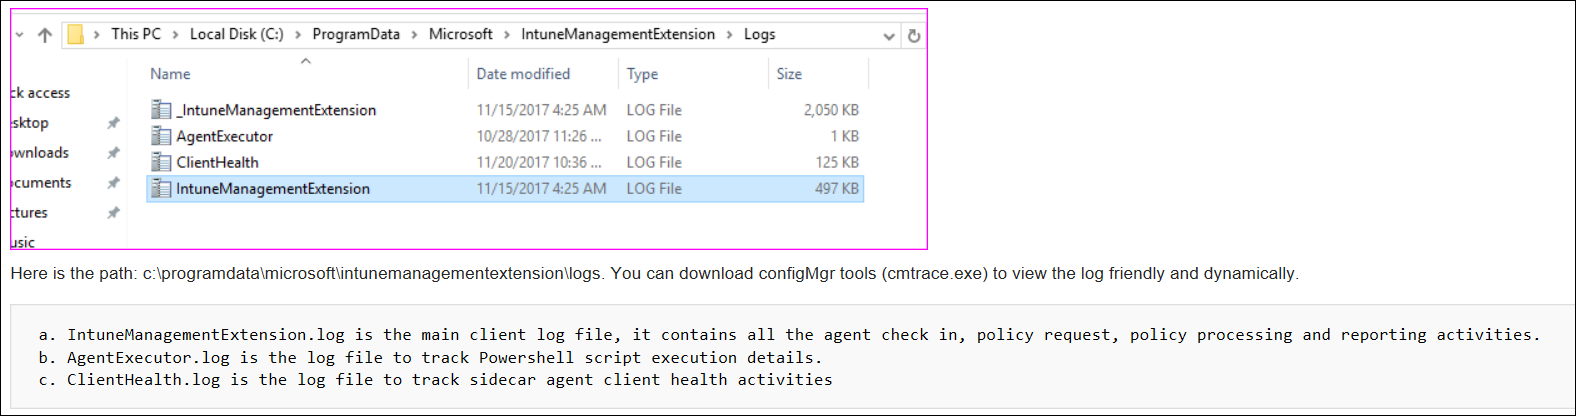 Captura de pantalla o registros de agente de CMTrace de muestra en Microsoft Intune